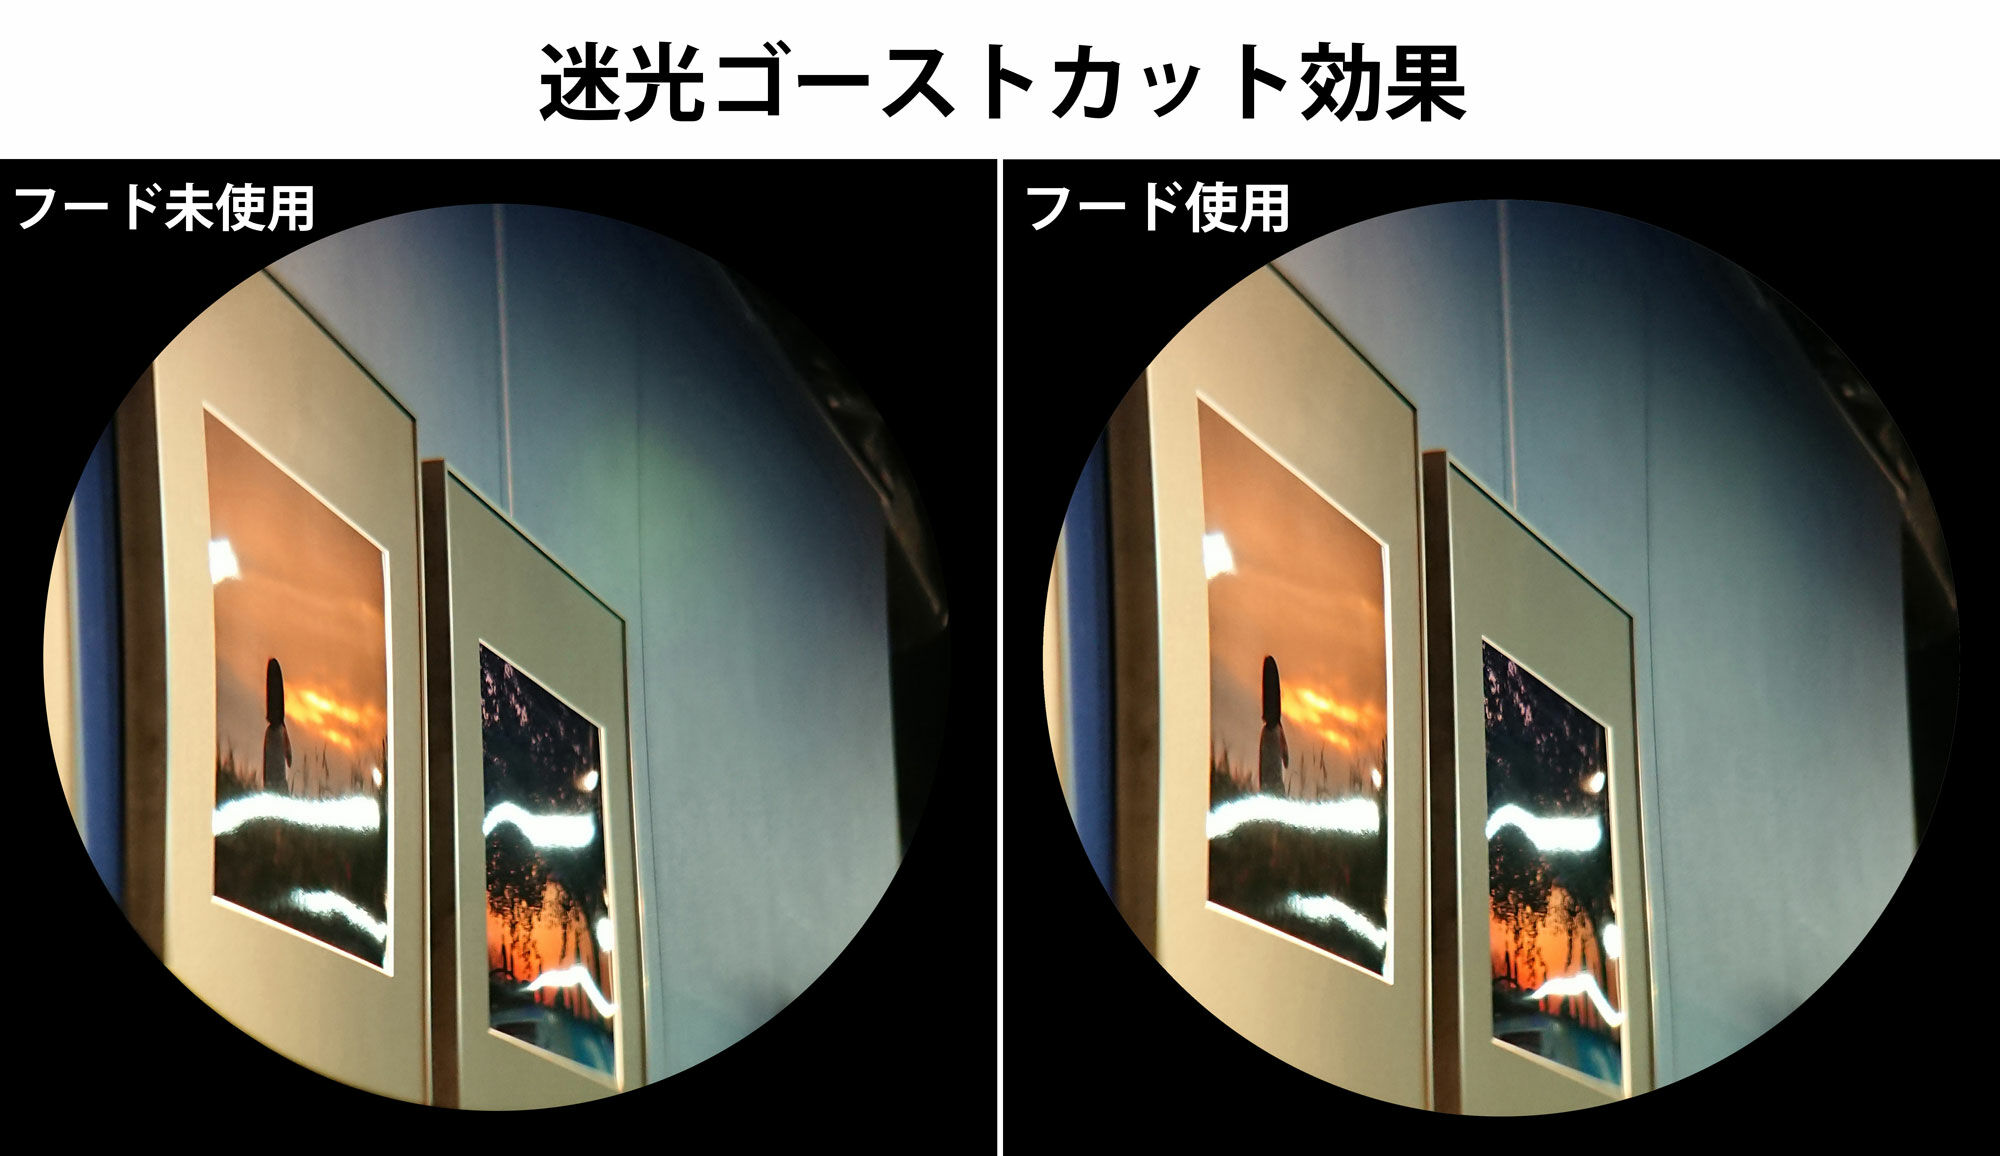 日本製 001462  ギャラリーEYE 4×12 4倍  最大88%OFFクーポン Kenko 単眼鏡  12mm口径 最短合焦距離19cm BLACK